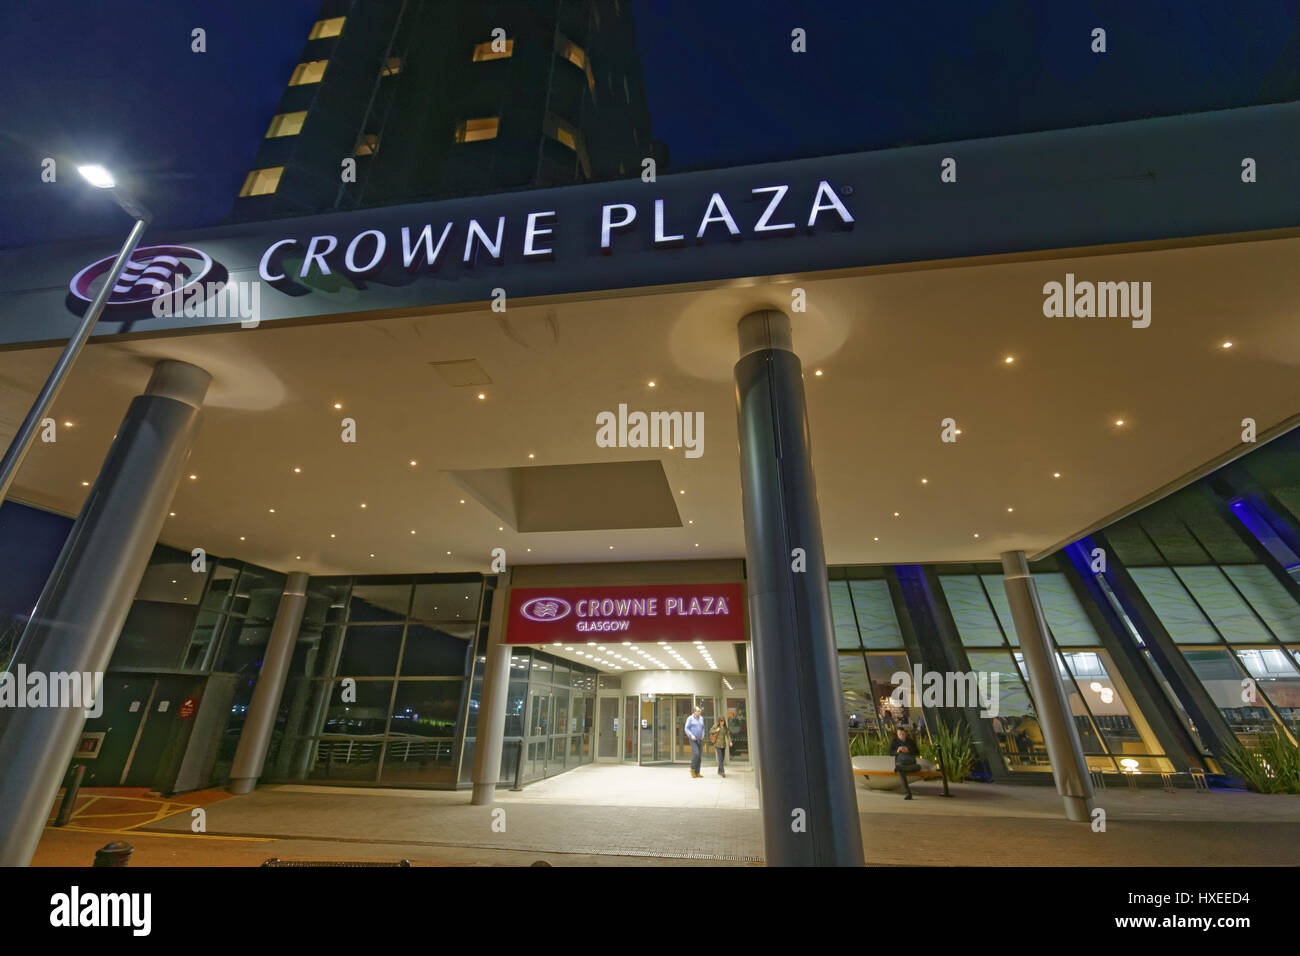 crowne plaza hotel emtrance Stock Photo